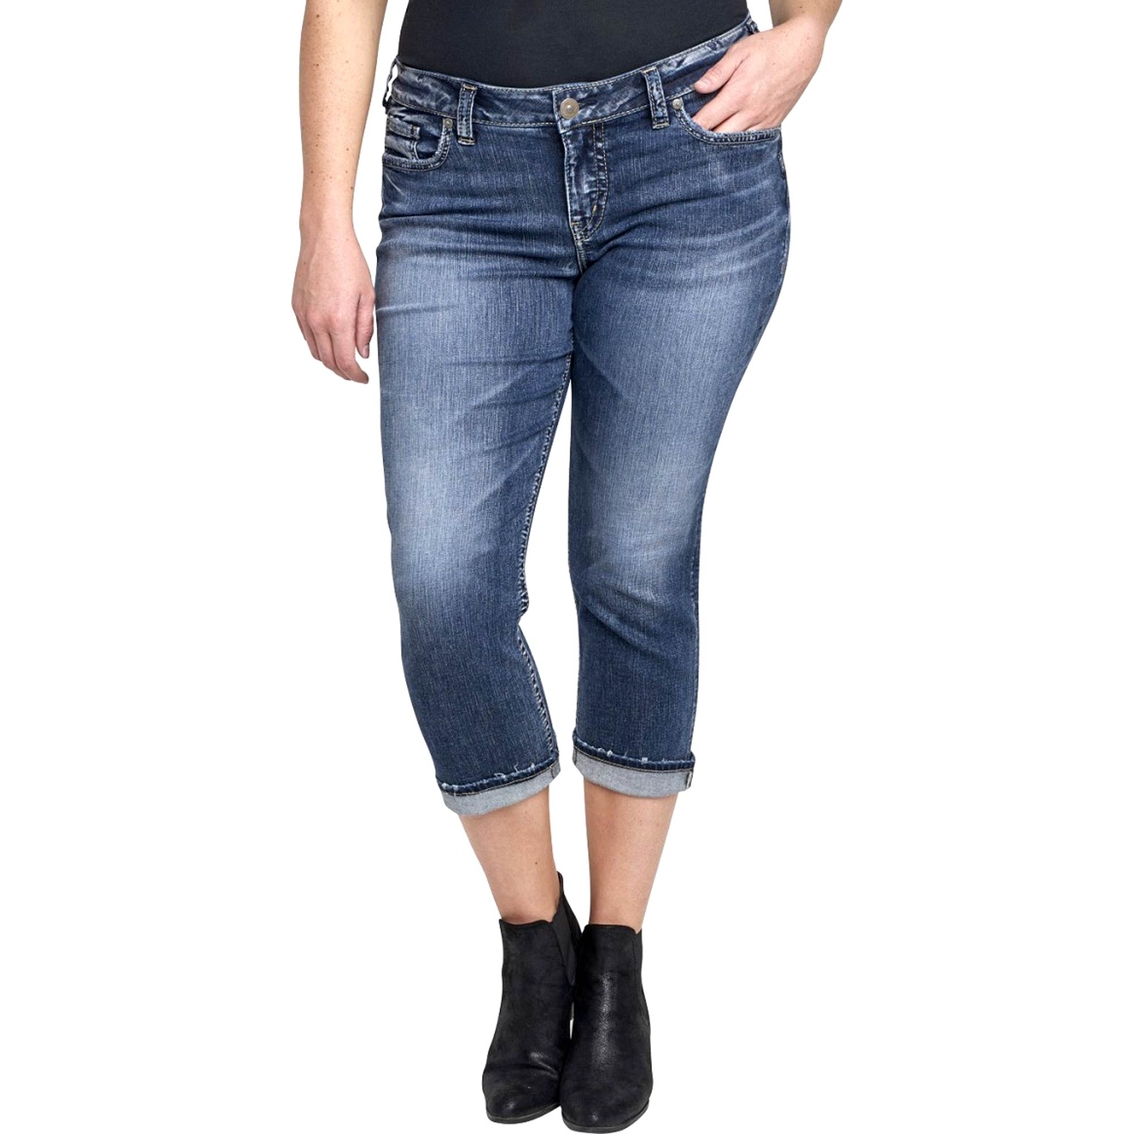 Silver Jeans Plus Size Suki Capris | Pants & Capris | Clothing ...